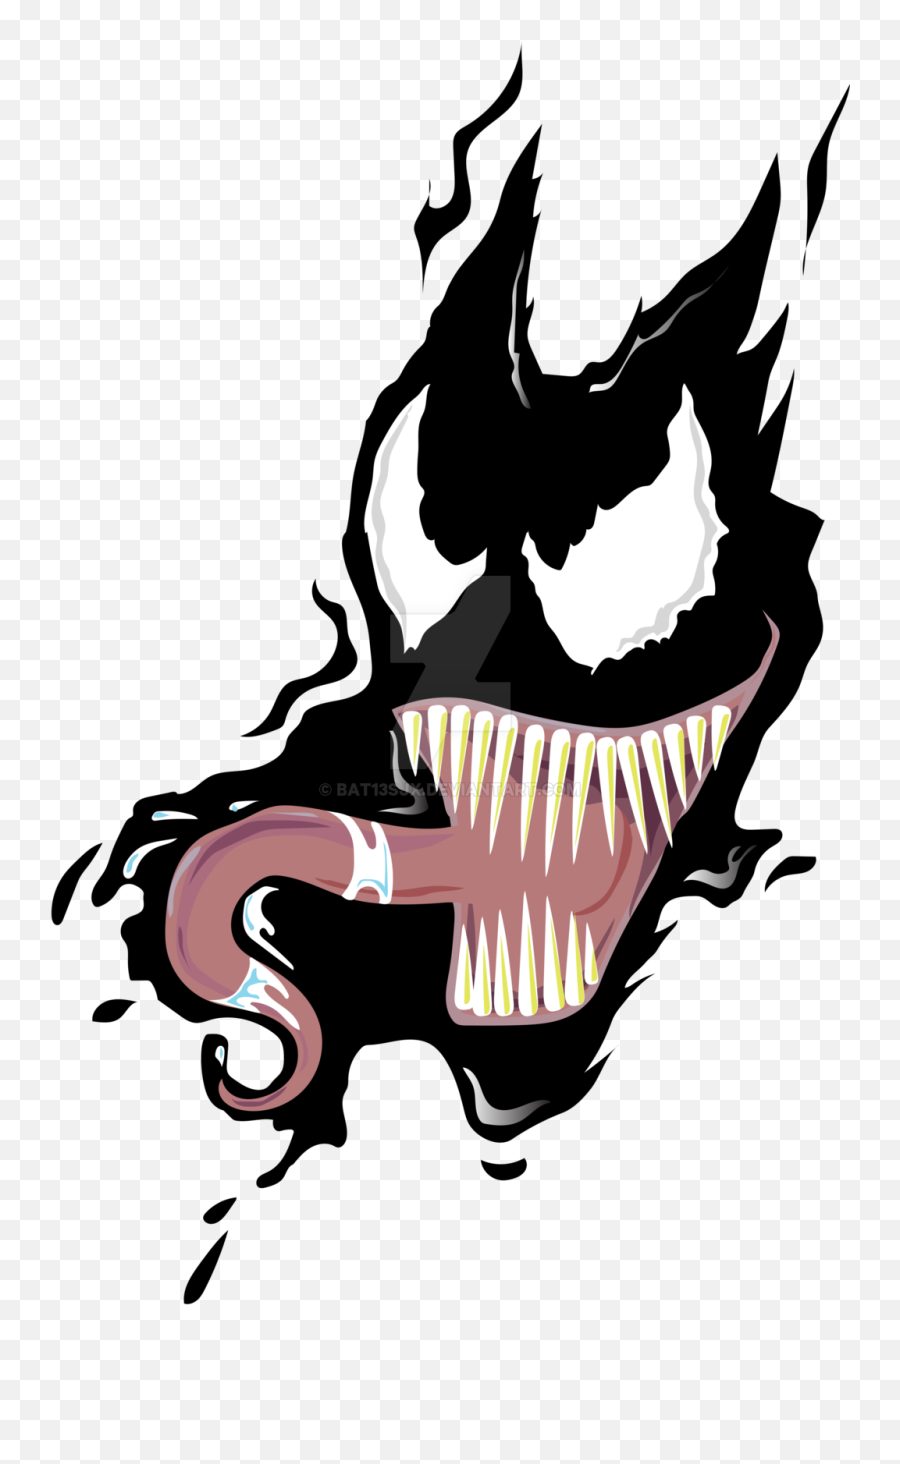 Venom Face Cliparts - Venom T Shirt Design Transparent Venom Art Png,Venom Transparent